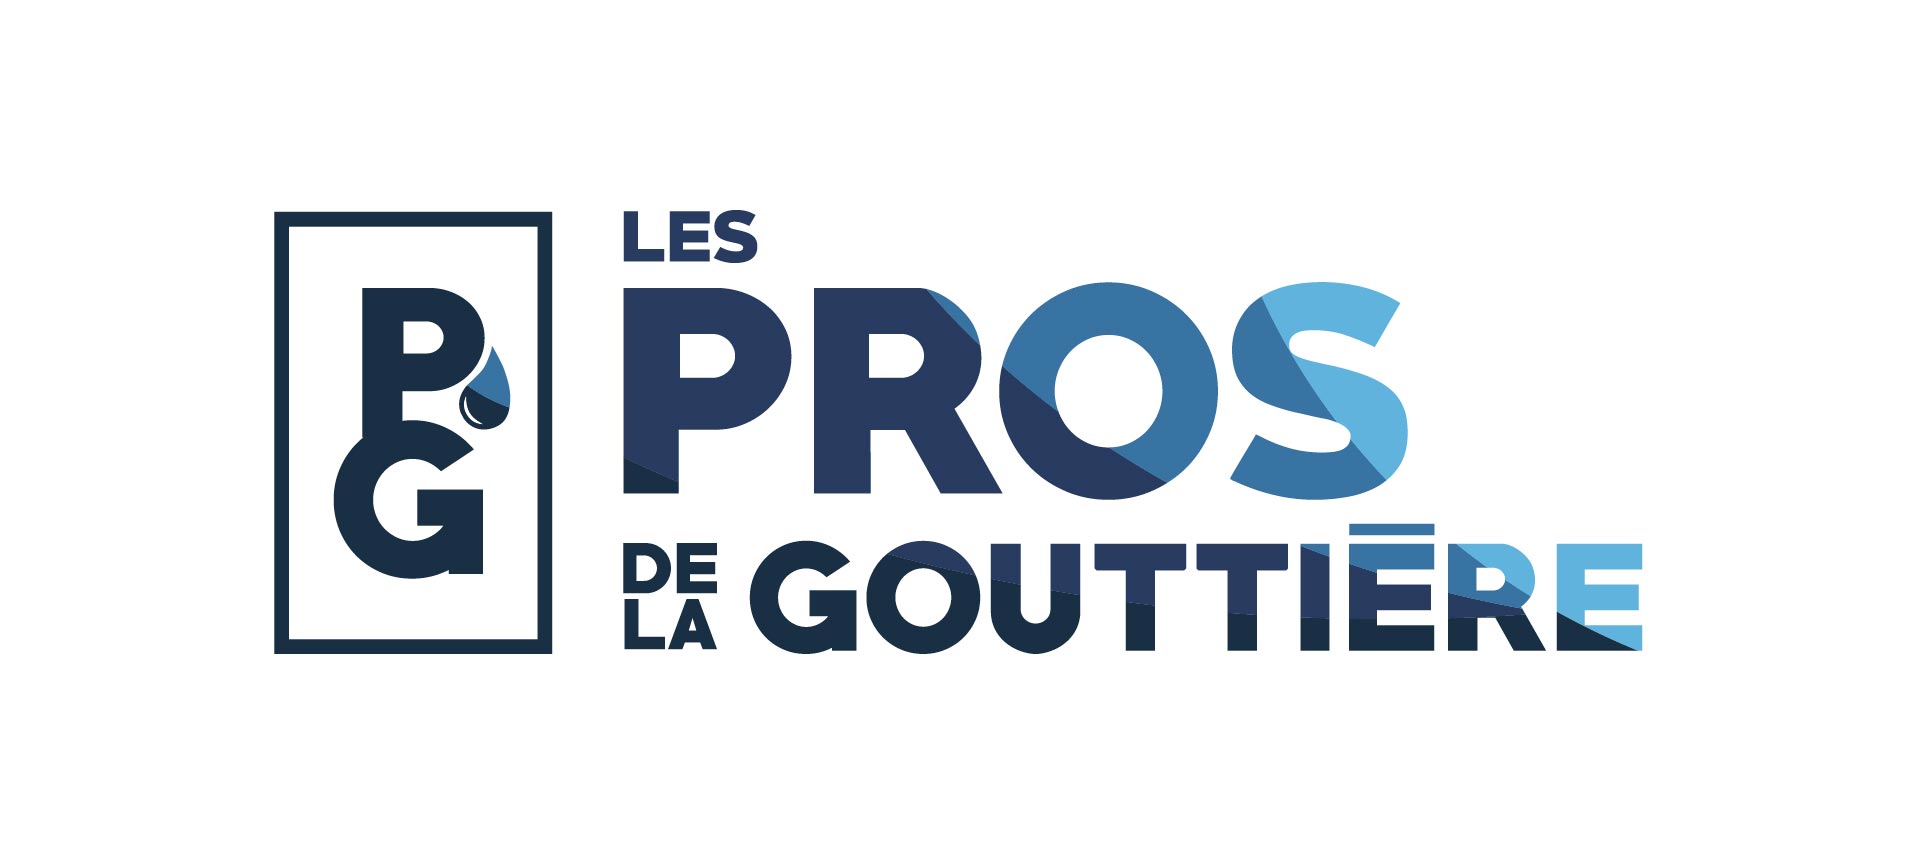 Les Pros de La Gouttière (2021)